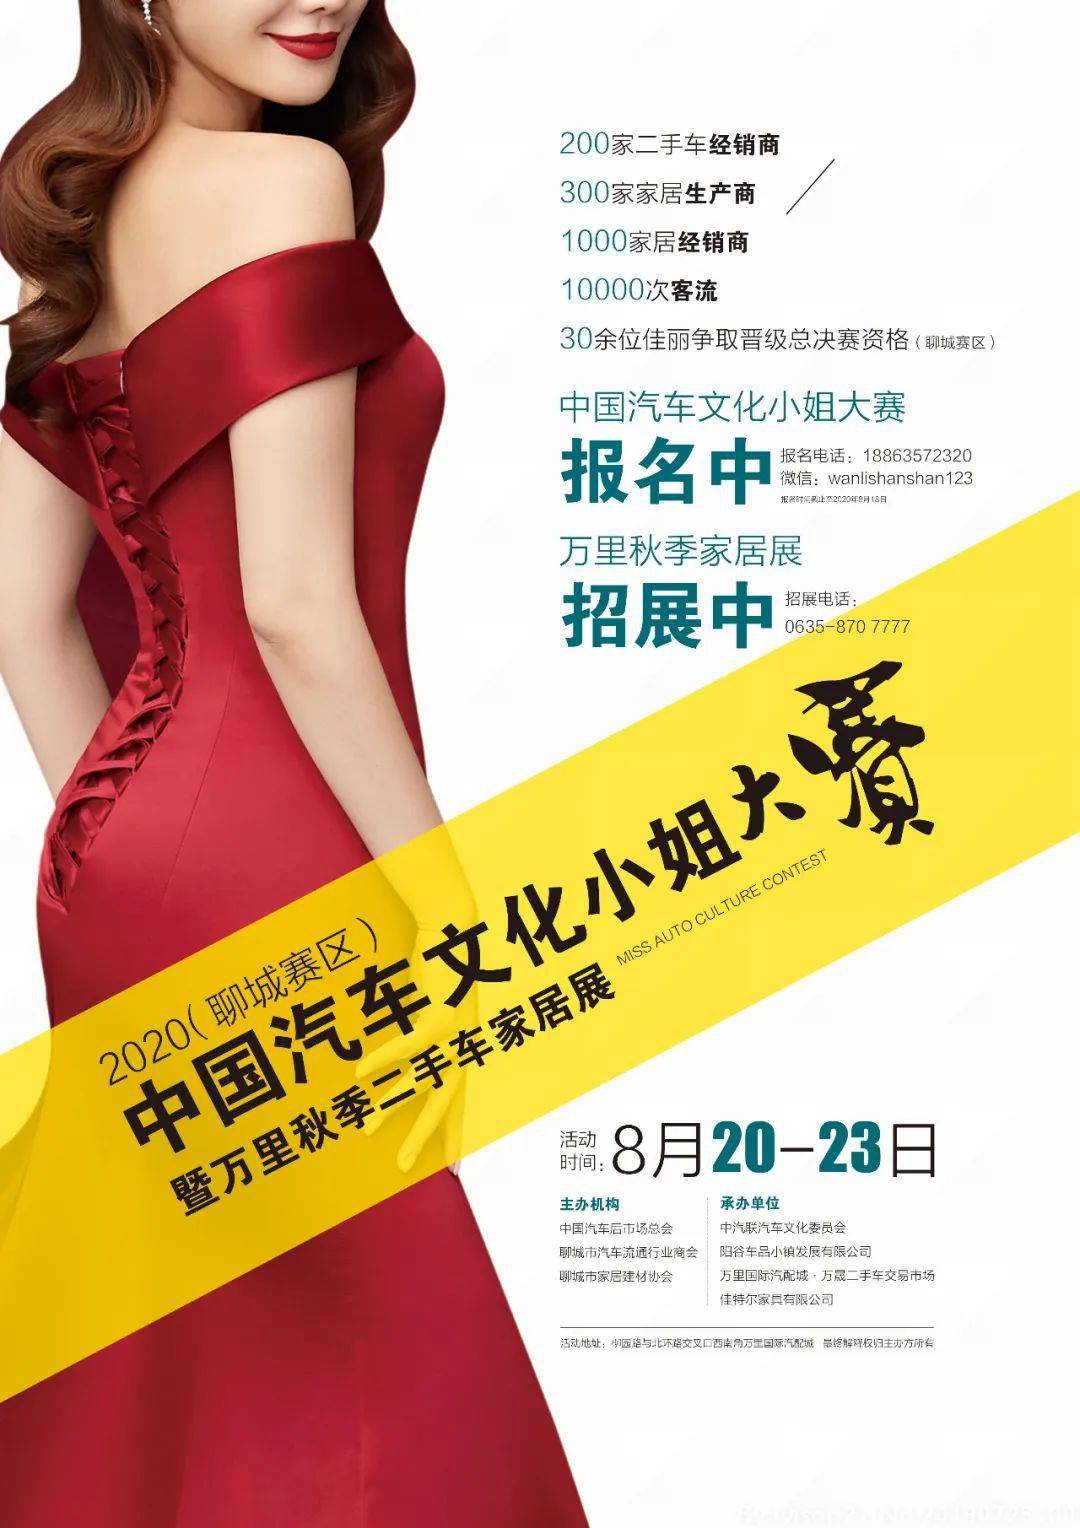 2020中国汽车文化小姐模特大赛(聊城赛区)启动报名!